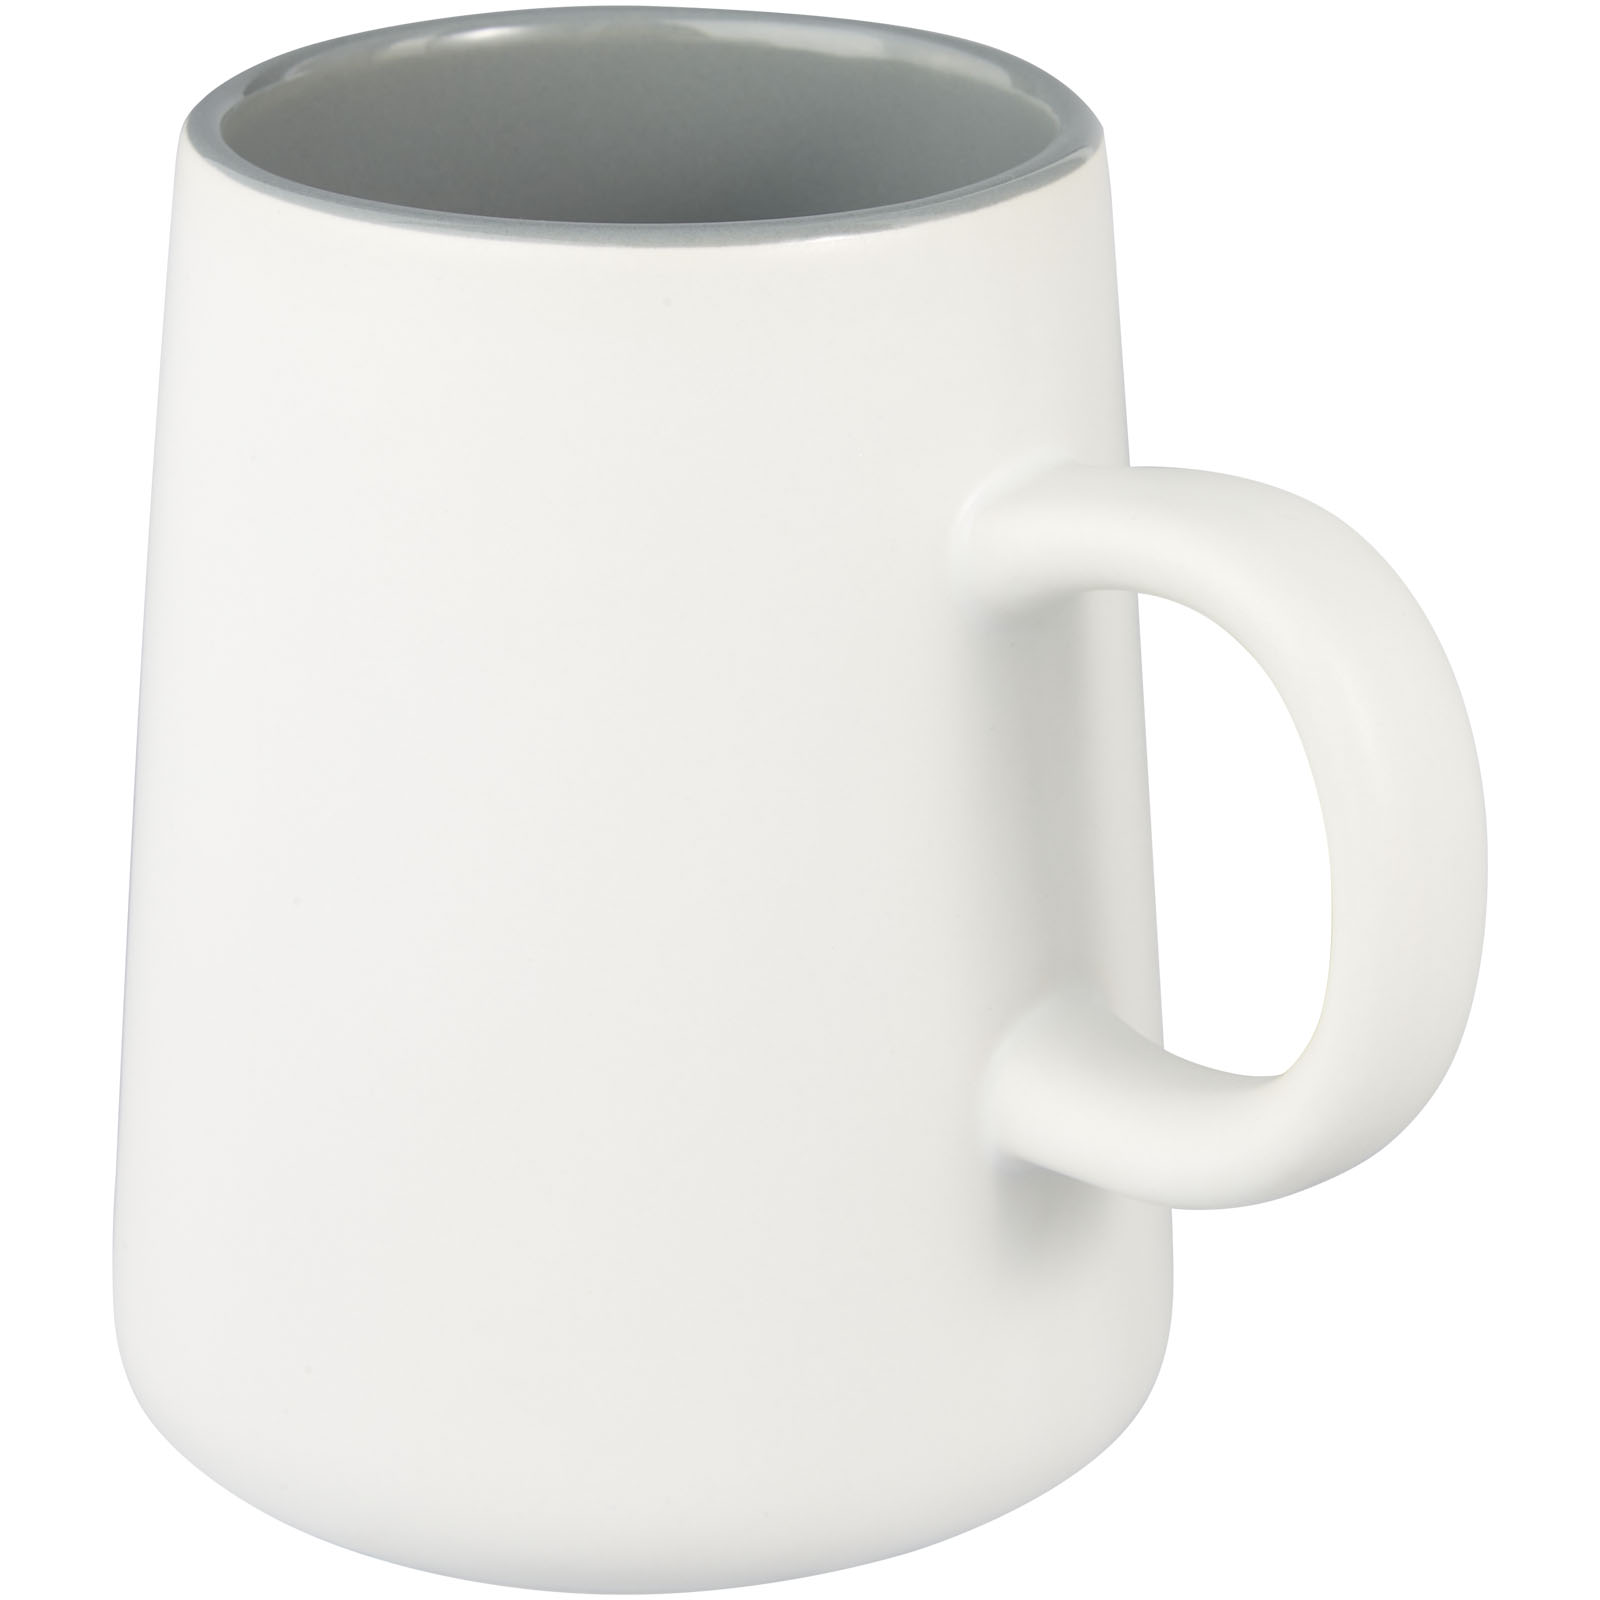 Standard mugs - Joe 450 ml ceramic mug 